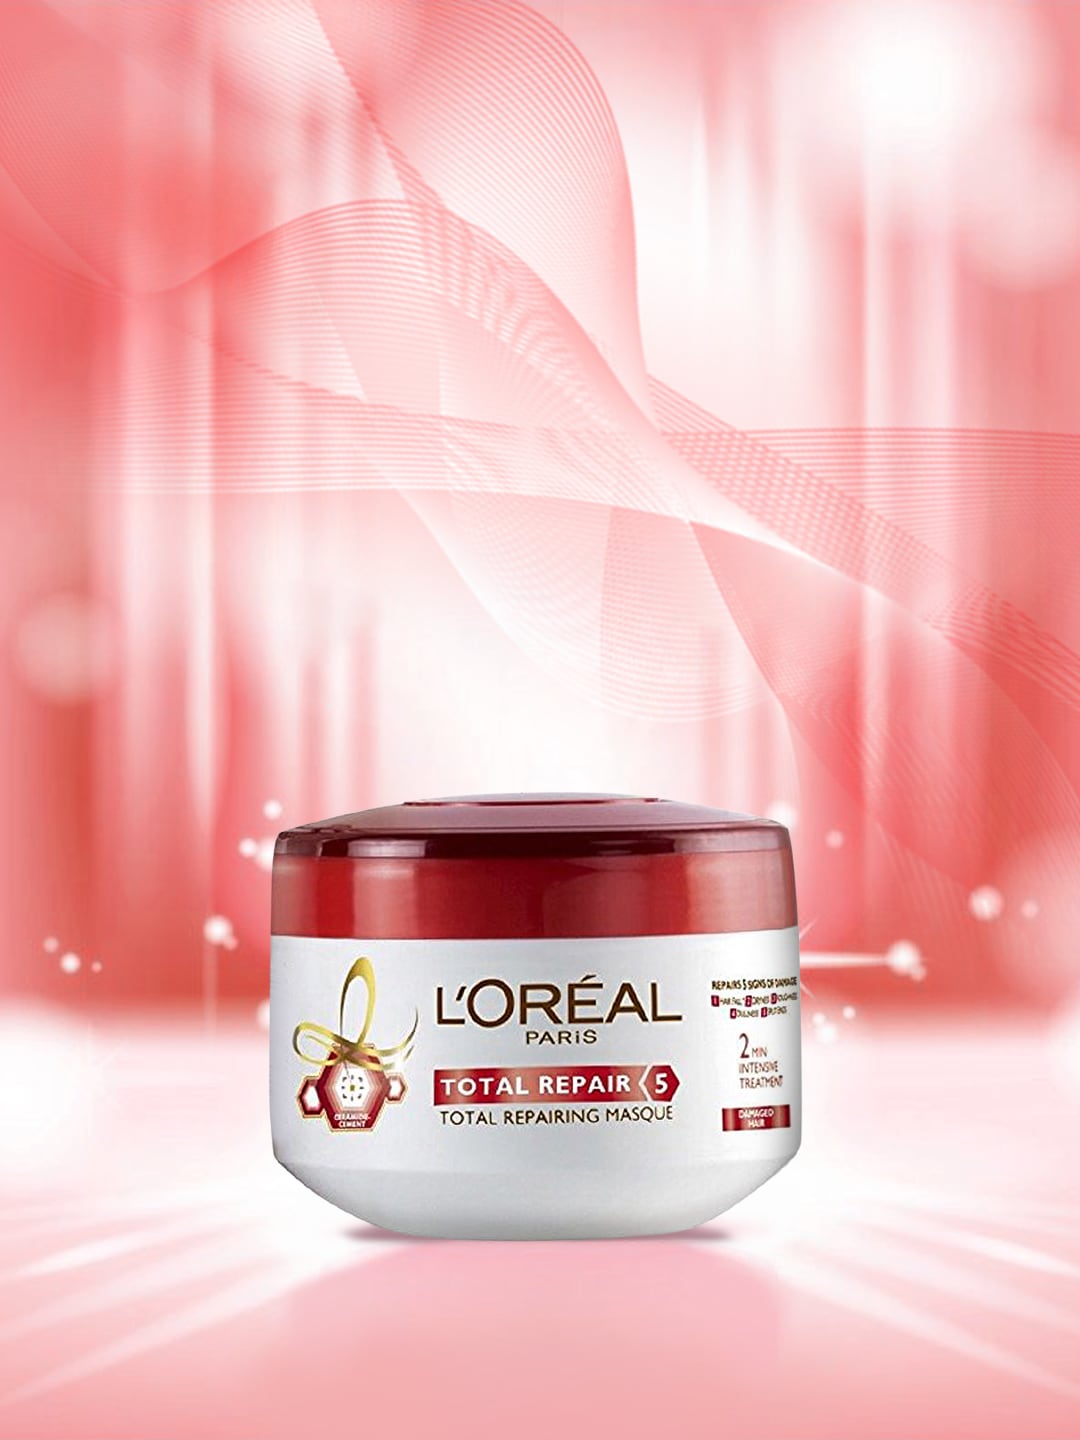 LOreal Paris Total Repair 5 Hair Masque 200ml Price in India